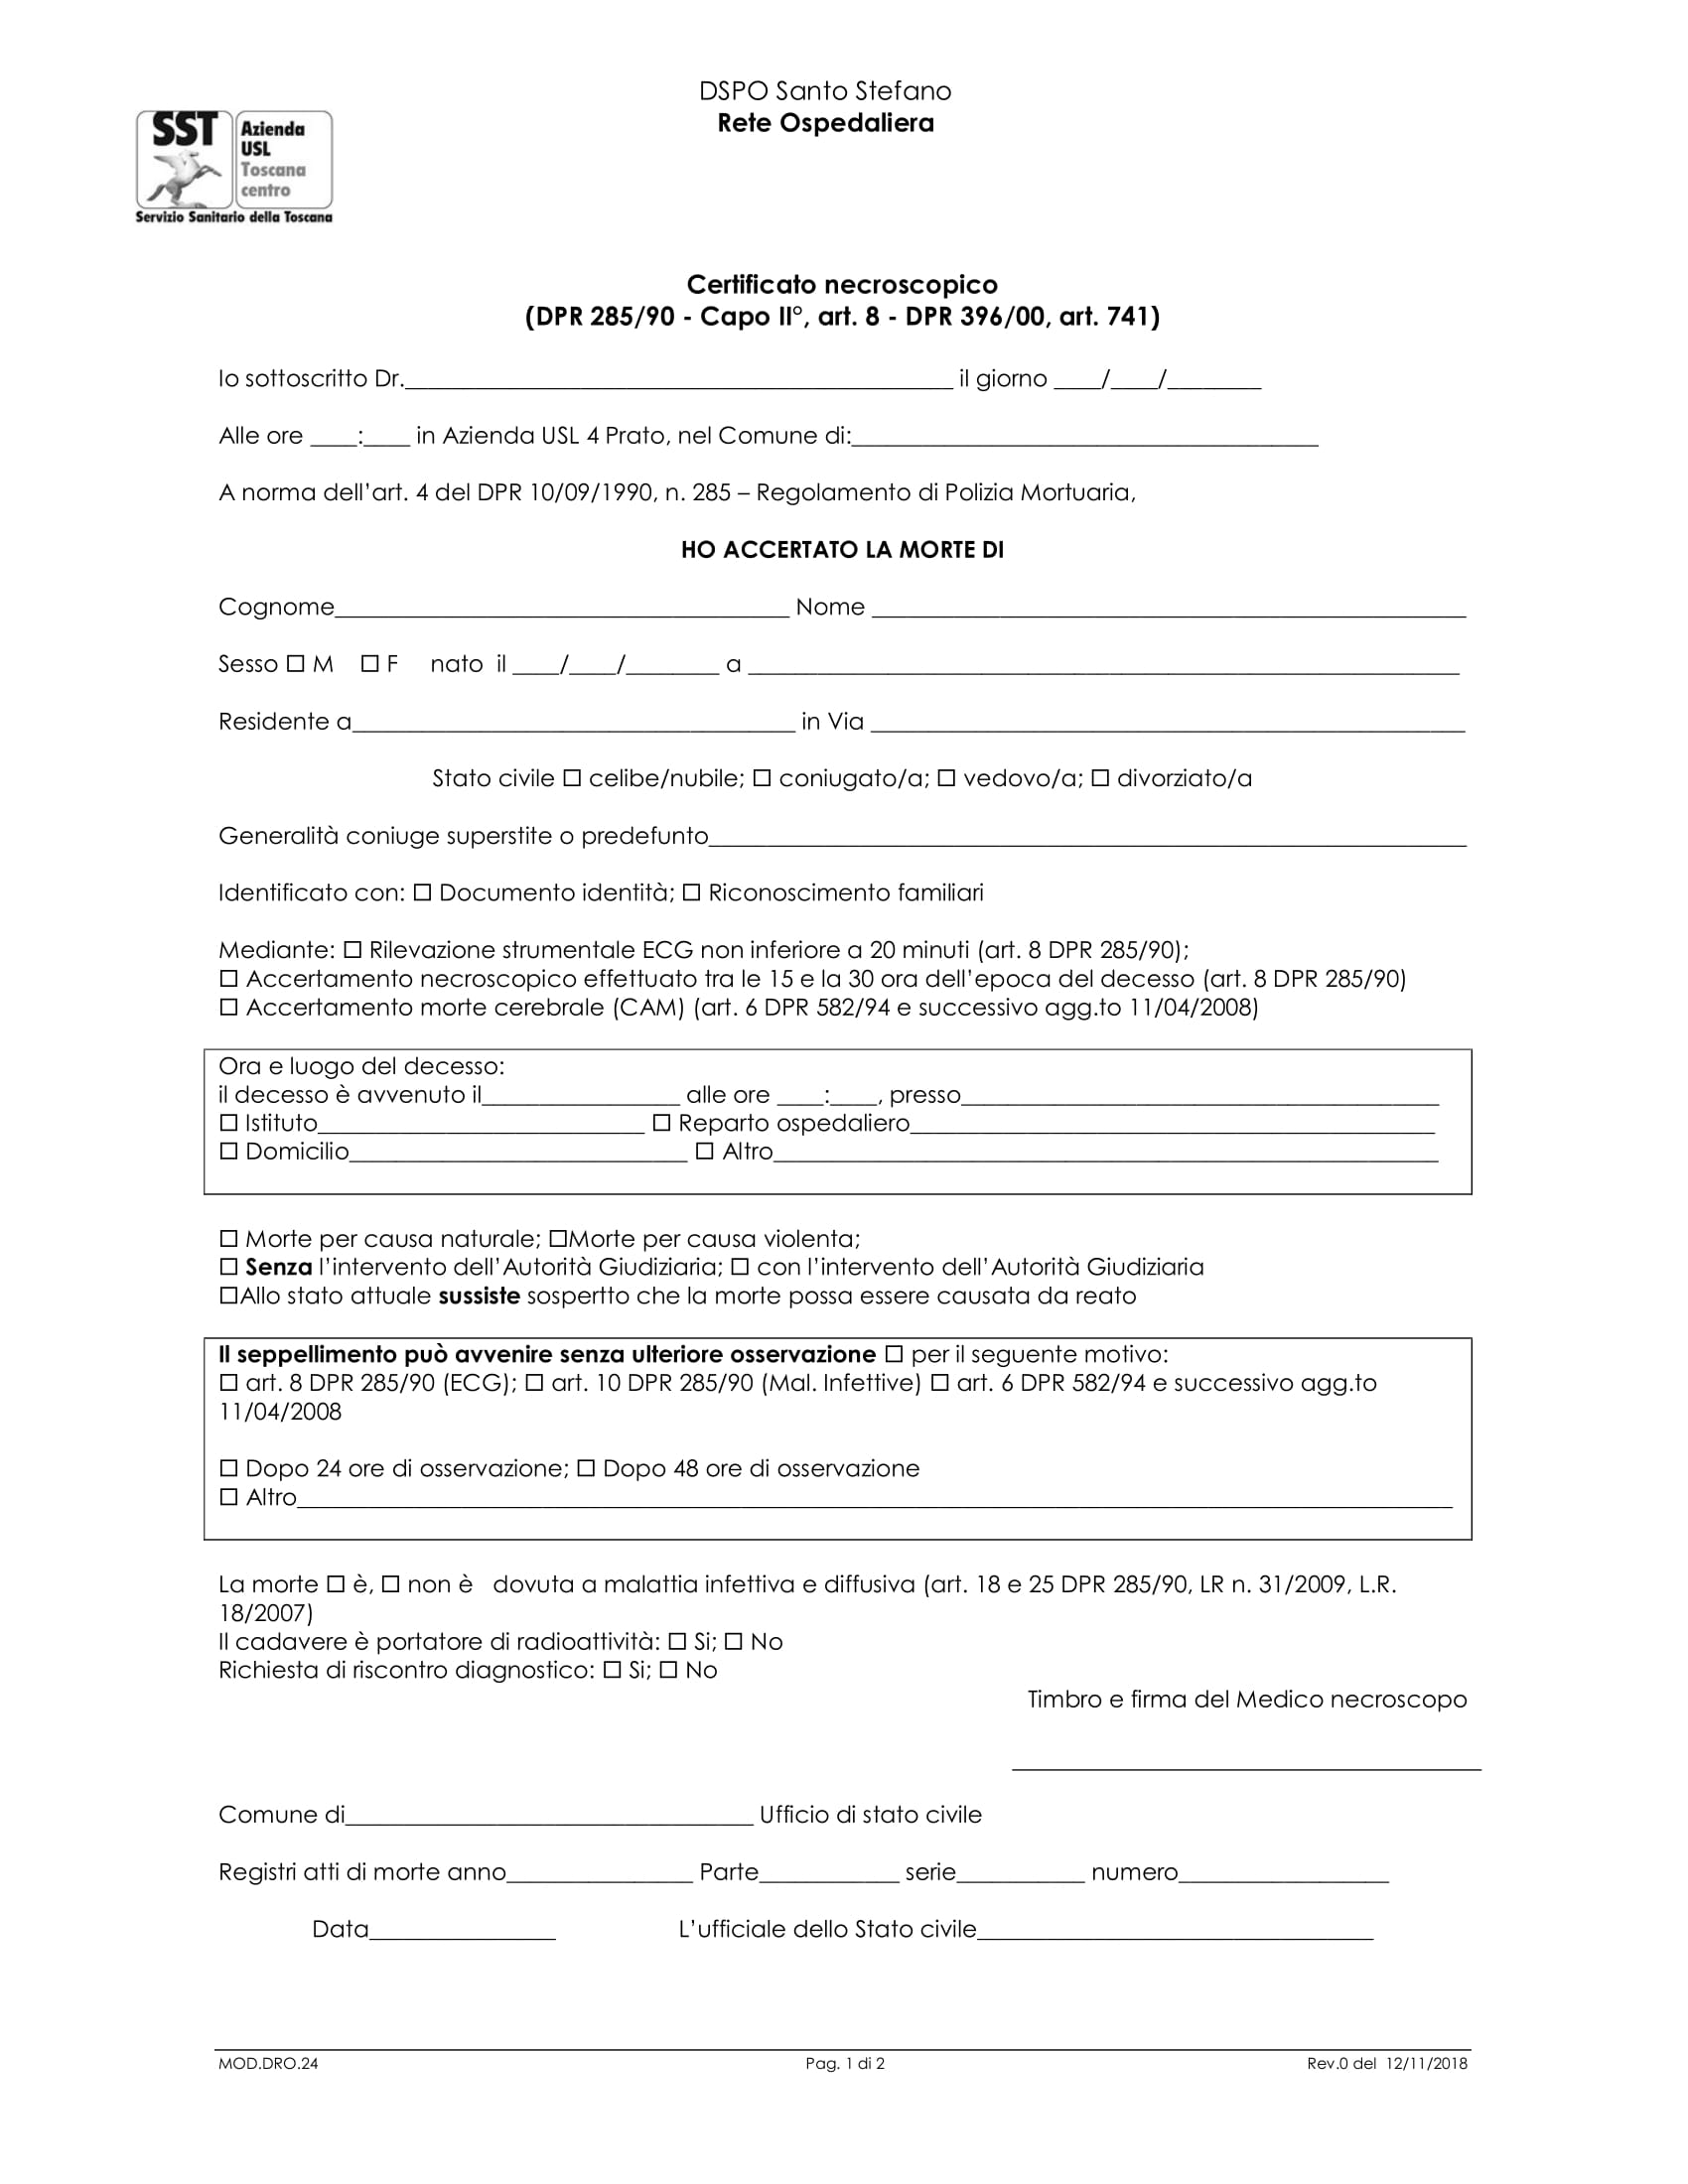 MOD.DRO.24 Certificato necroscopico (DPR 285/90 - Capo II°, art. 8 - DPR 396/00, art. 741)